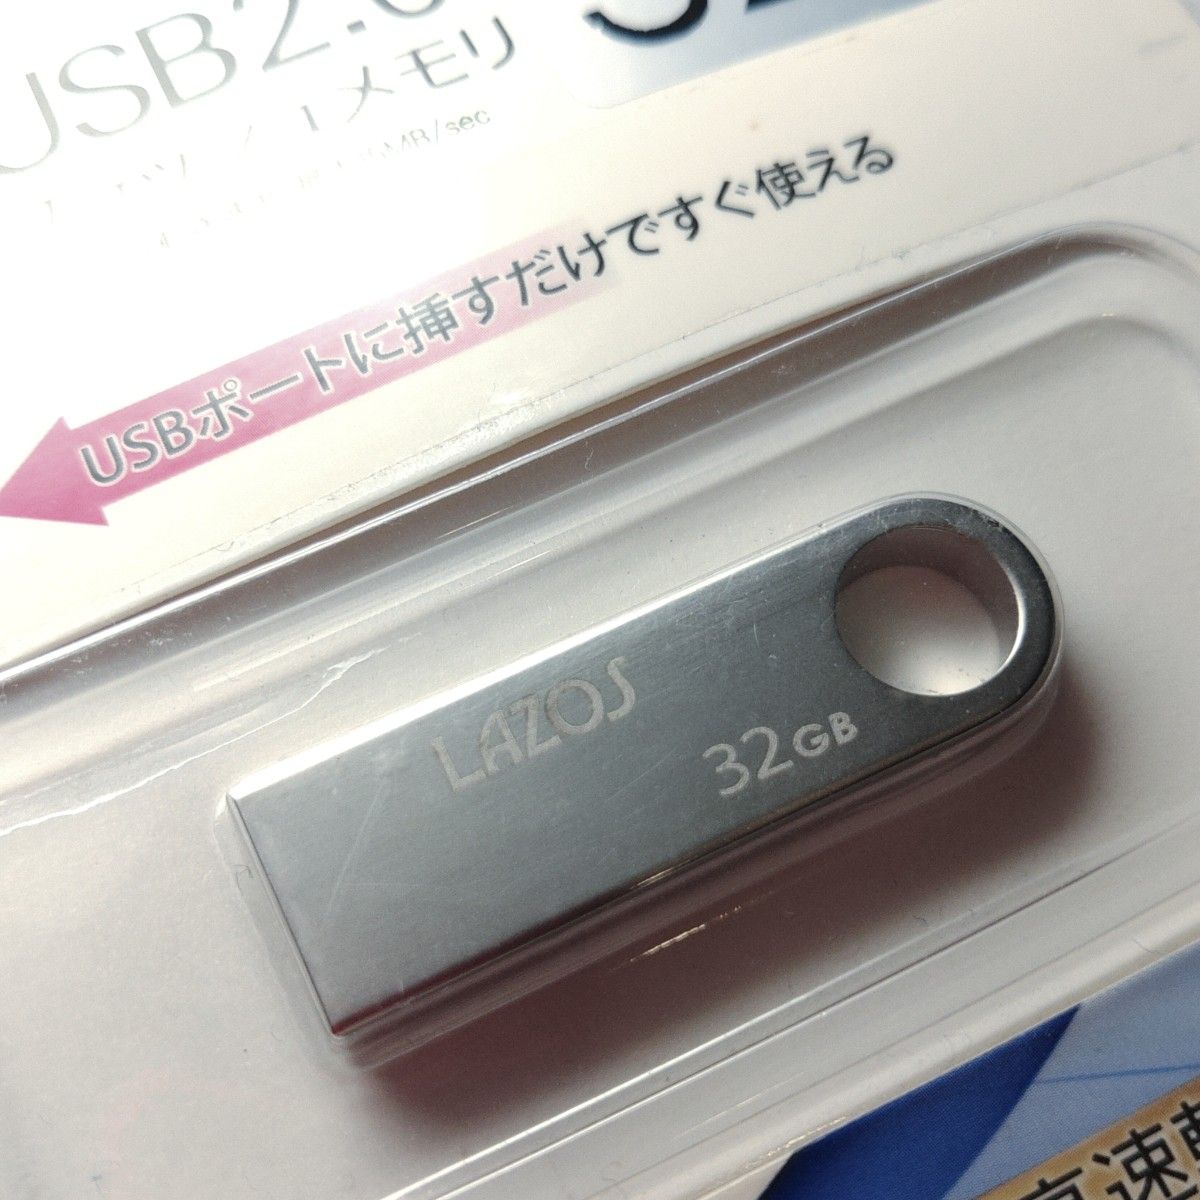 LAZOS USB2.0 フラッシュメモリ 32GB 2個セット 型番L-U32